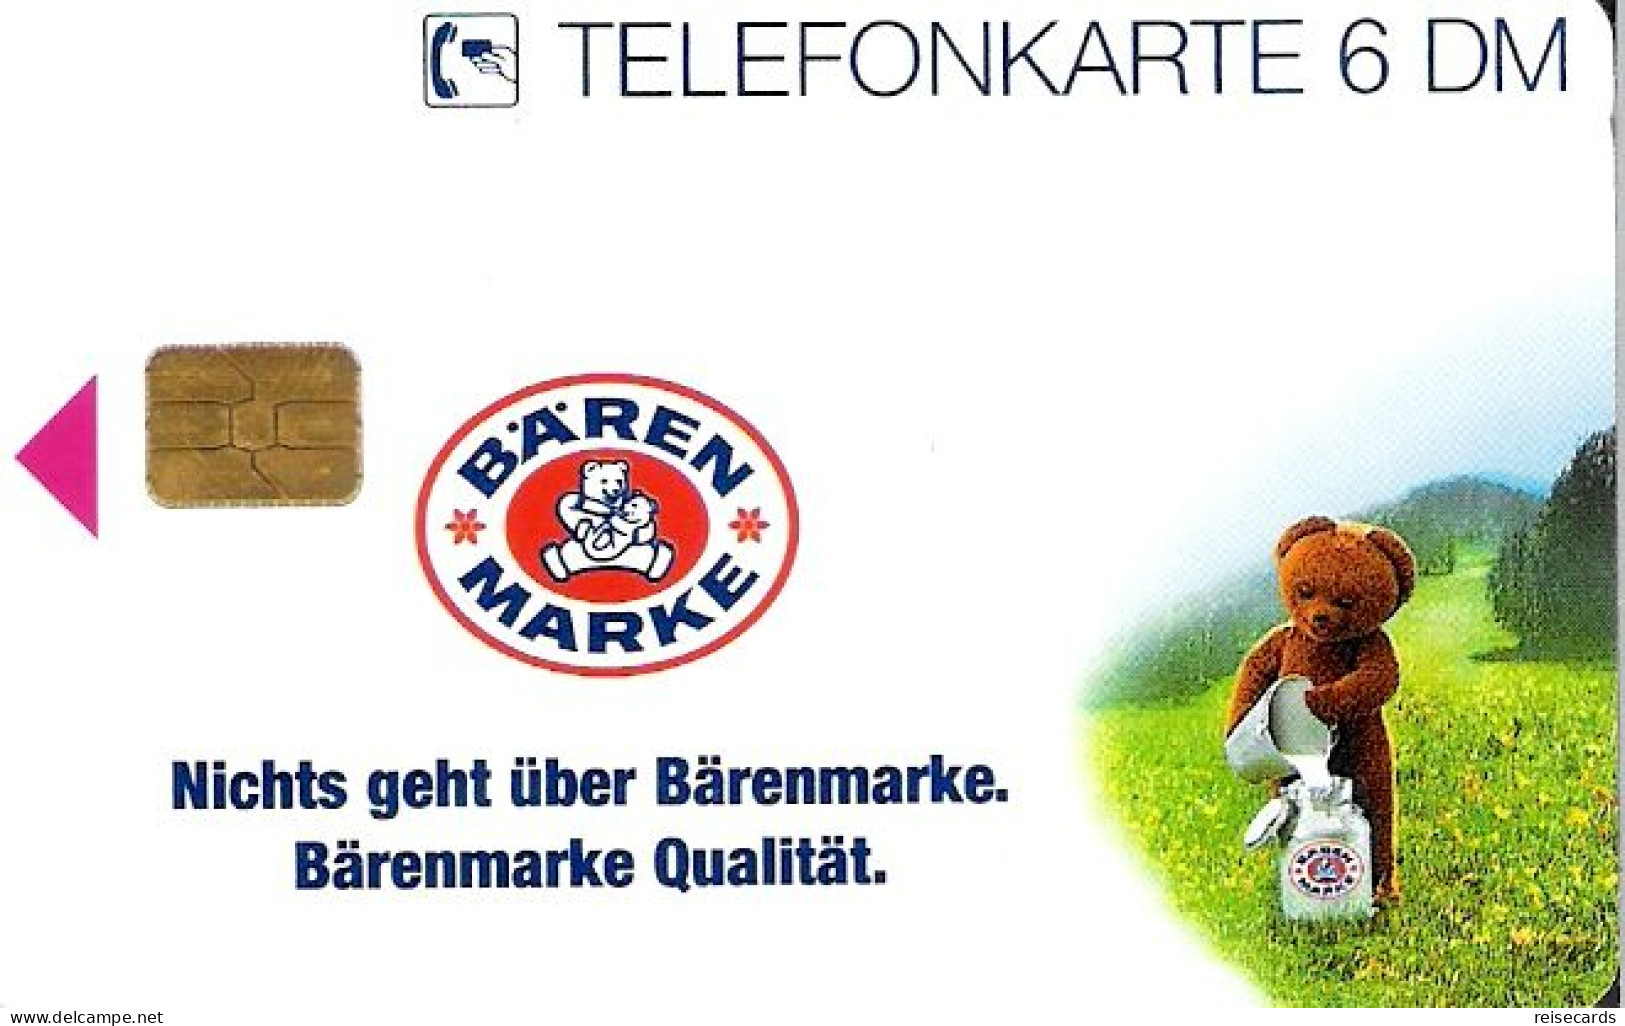 Germany: O 2197 12.95 Nestlé Bärenmarke, Edition 1 - O-Series: Kundenserie Vom Sammlerservice Ausgeschlossen